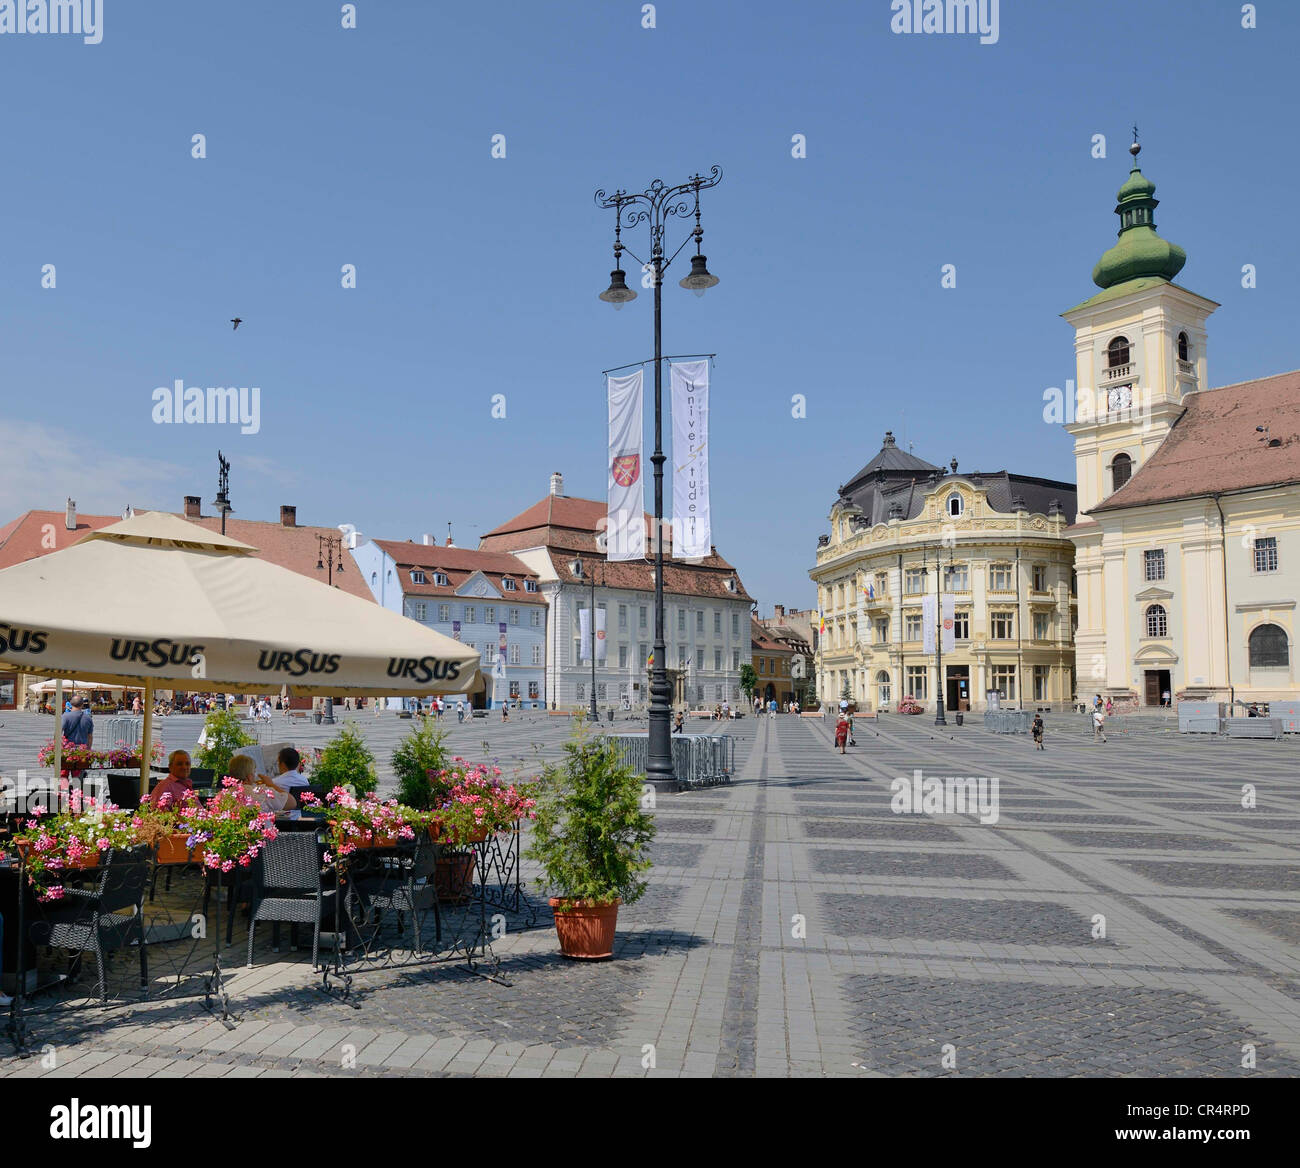 Piata Mare Square with the Catholic Church, Sibiu, Romania, Europe Stock Photo